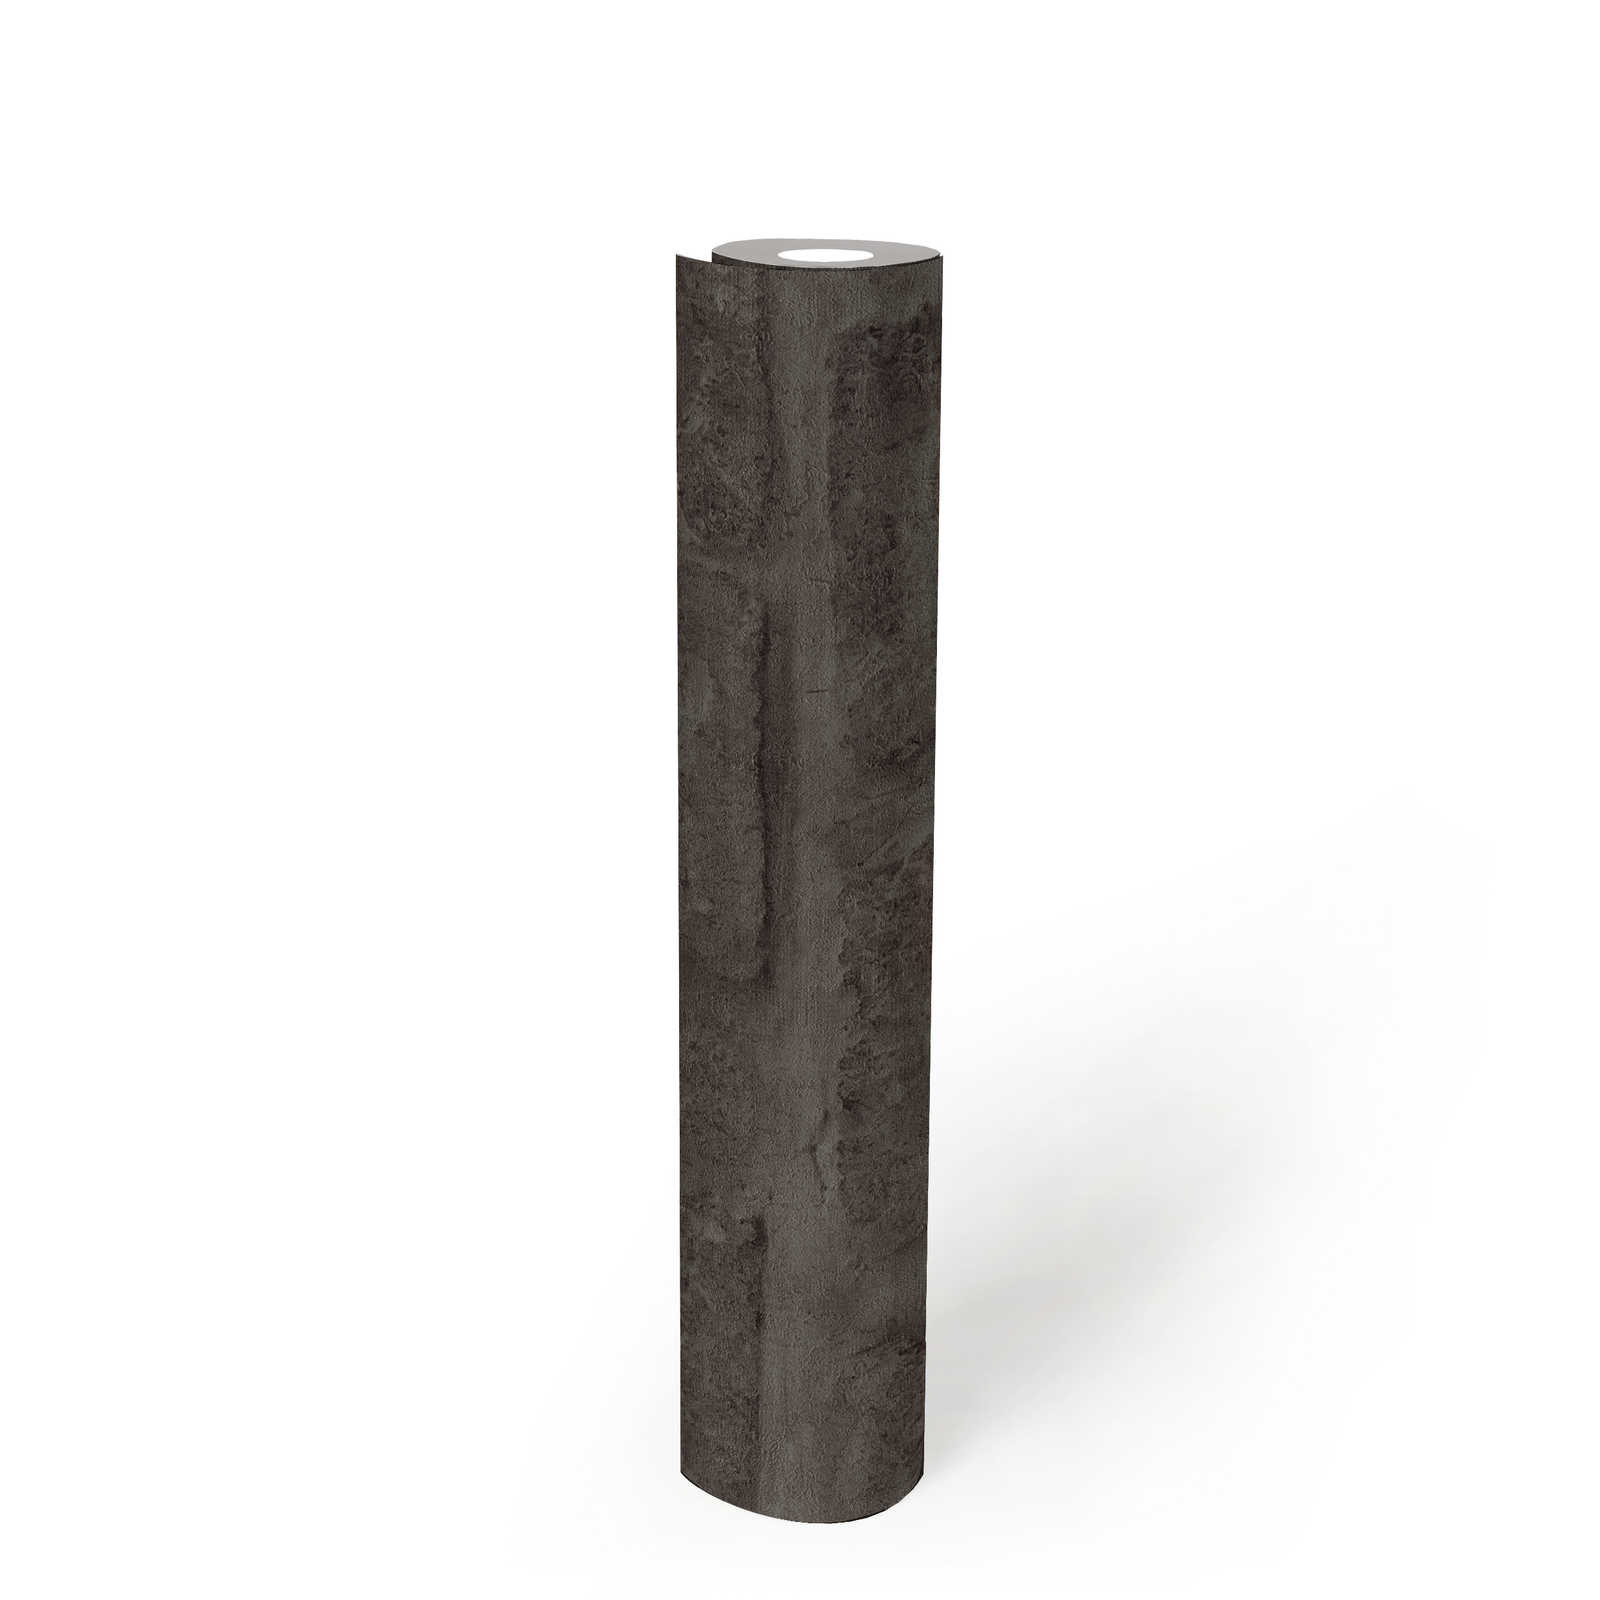             Anthracite Papier peint intissé imitation pierre & mur de briques - gris, noir
        